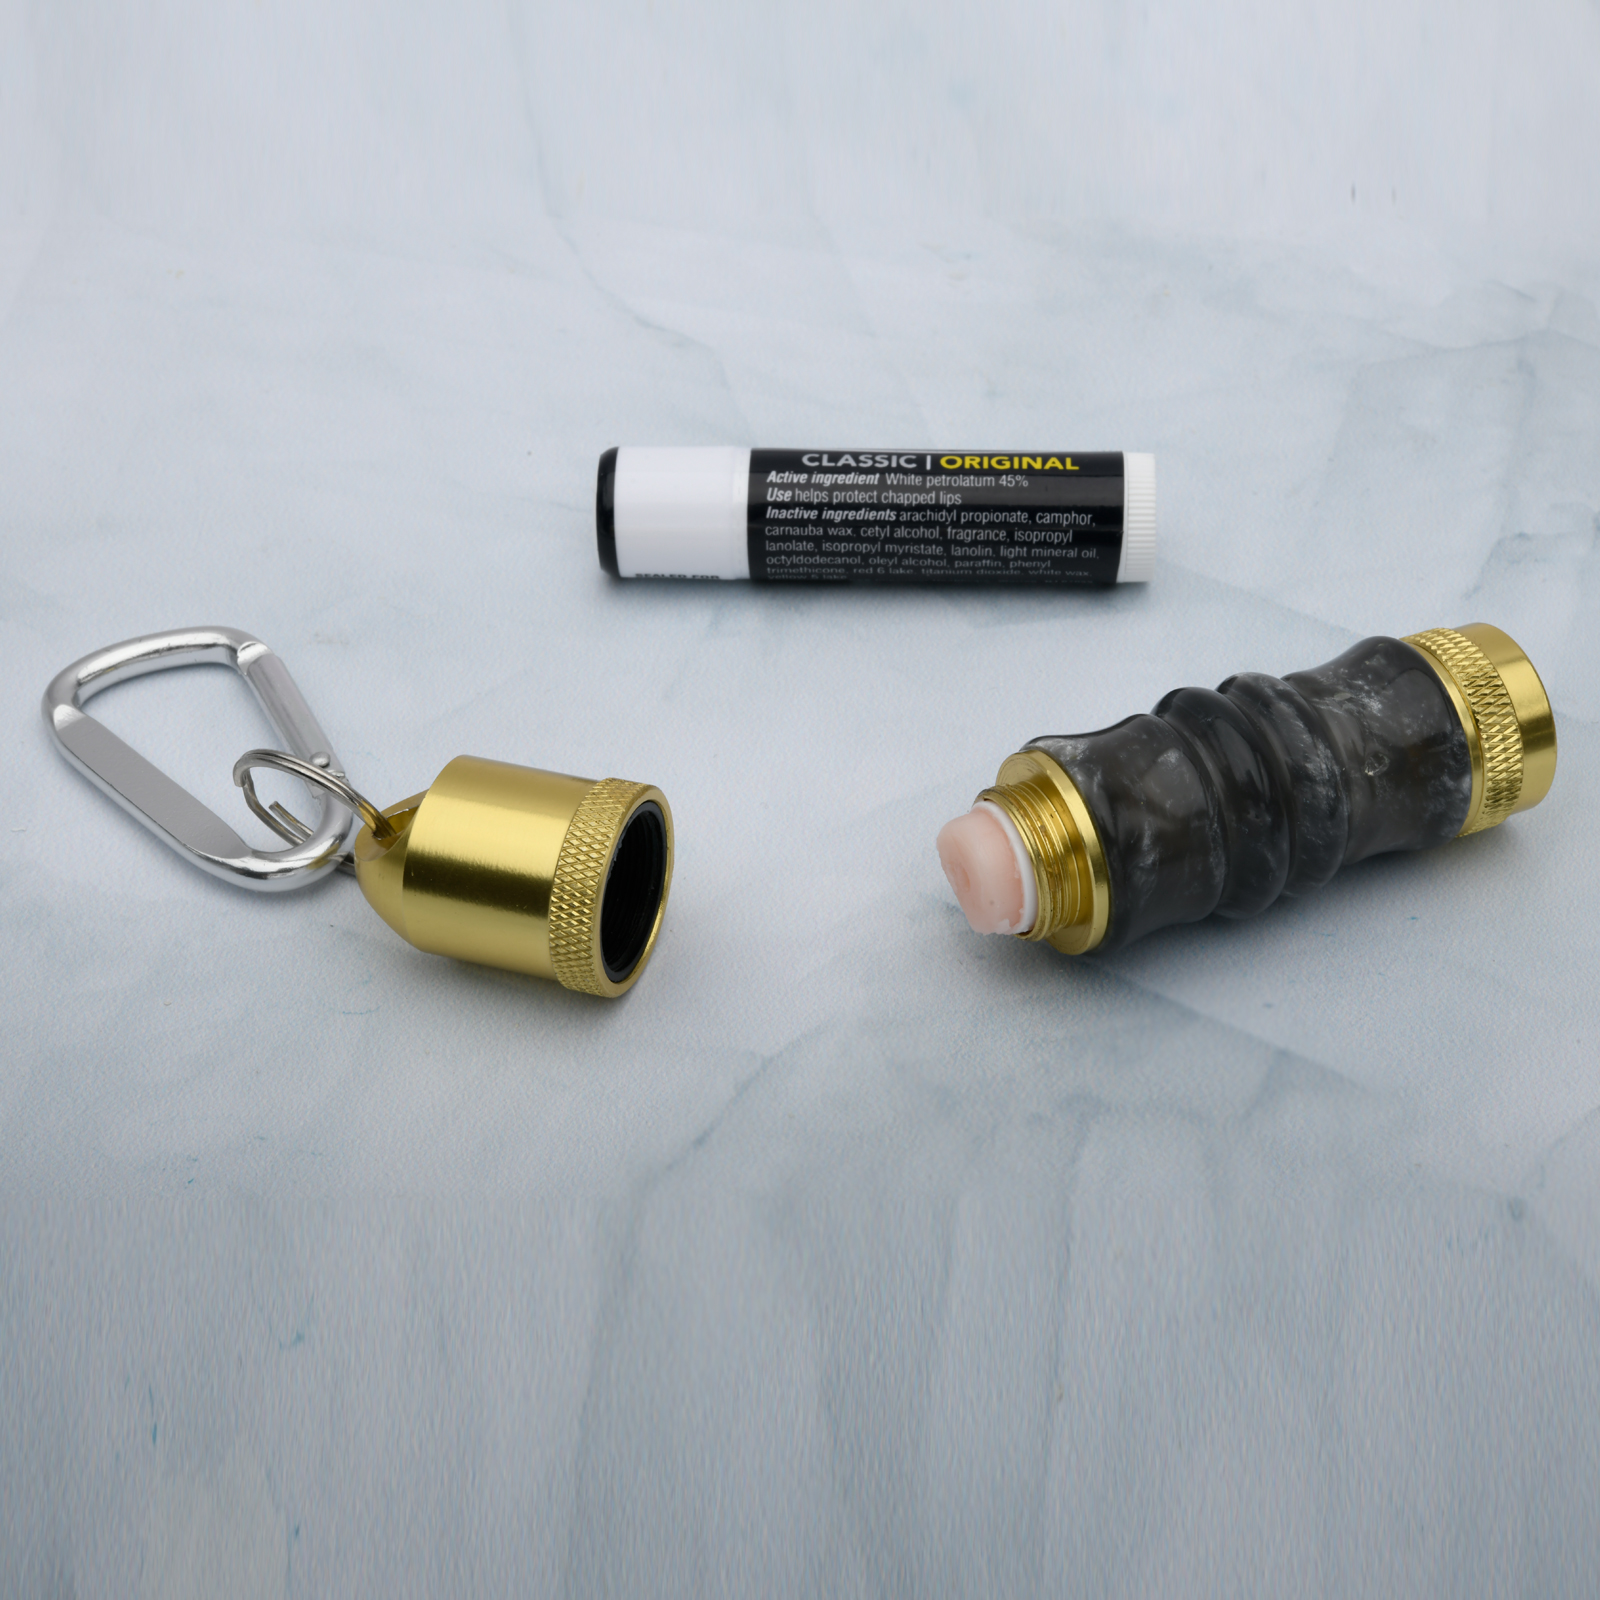 Lip Balm Holder Keychain Kit in Golden Anodized Aluminum at Penn